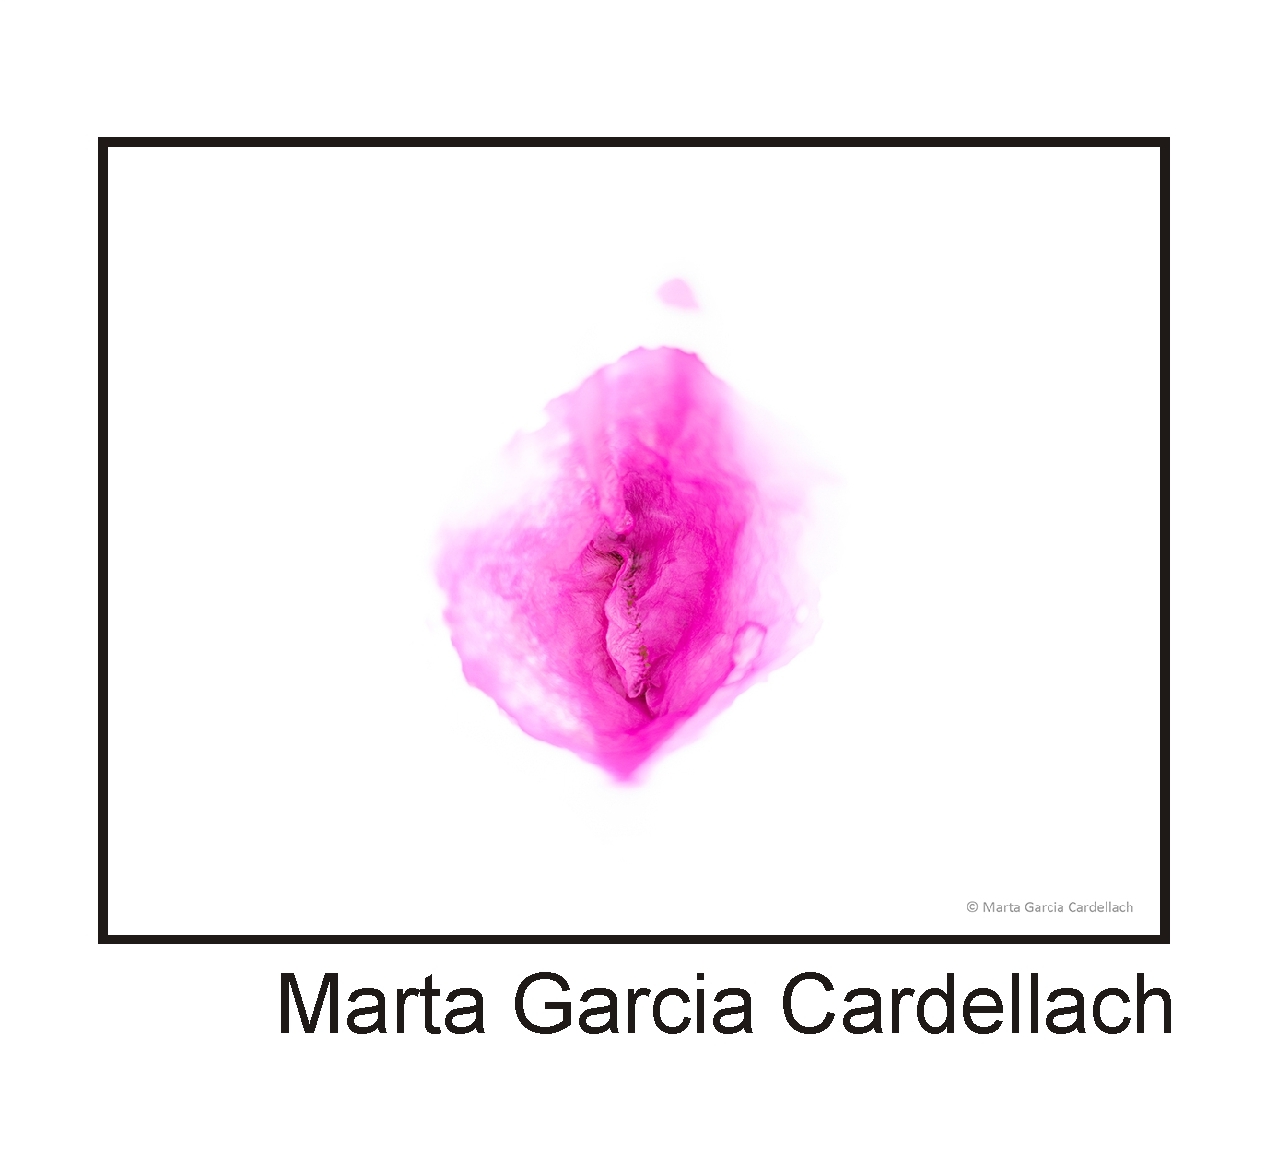  Marta Garcia Cardellach